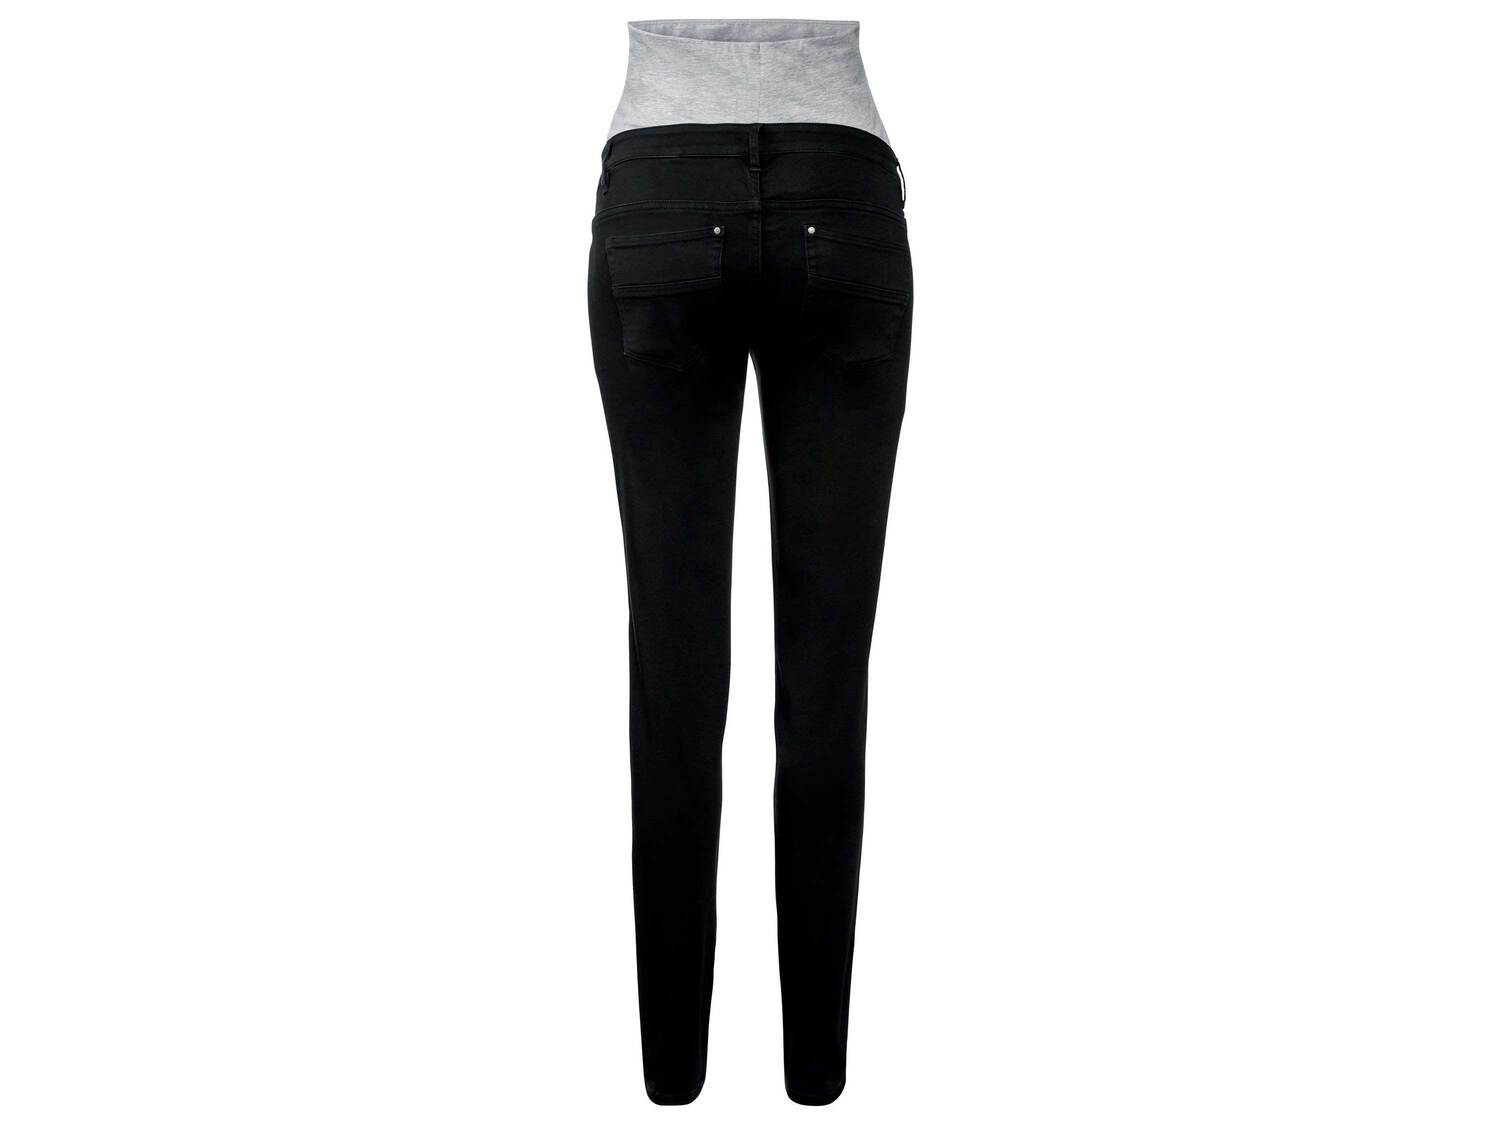 Jeansy ciążowe Esmara, cena 44,99 PLN 
- rozmiary: 34-44
- z miękkim, elastycznym ...